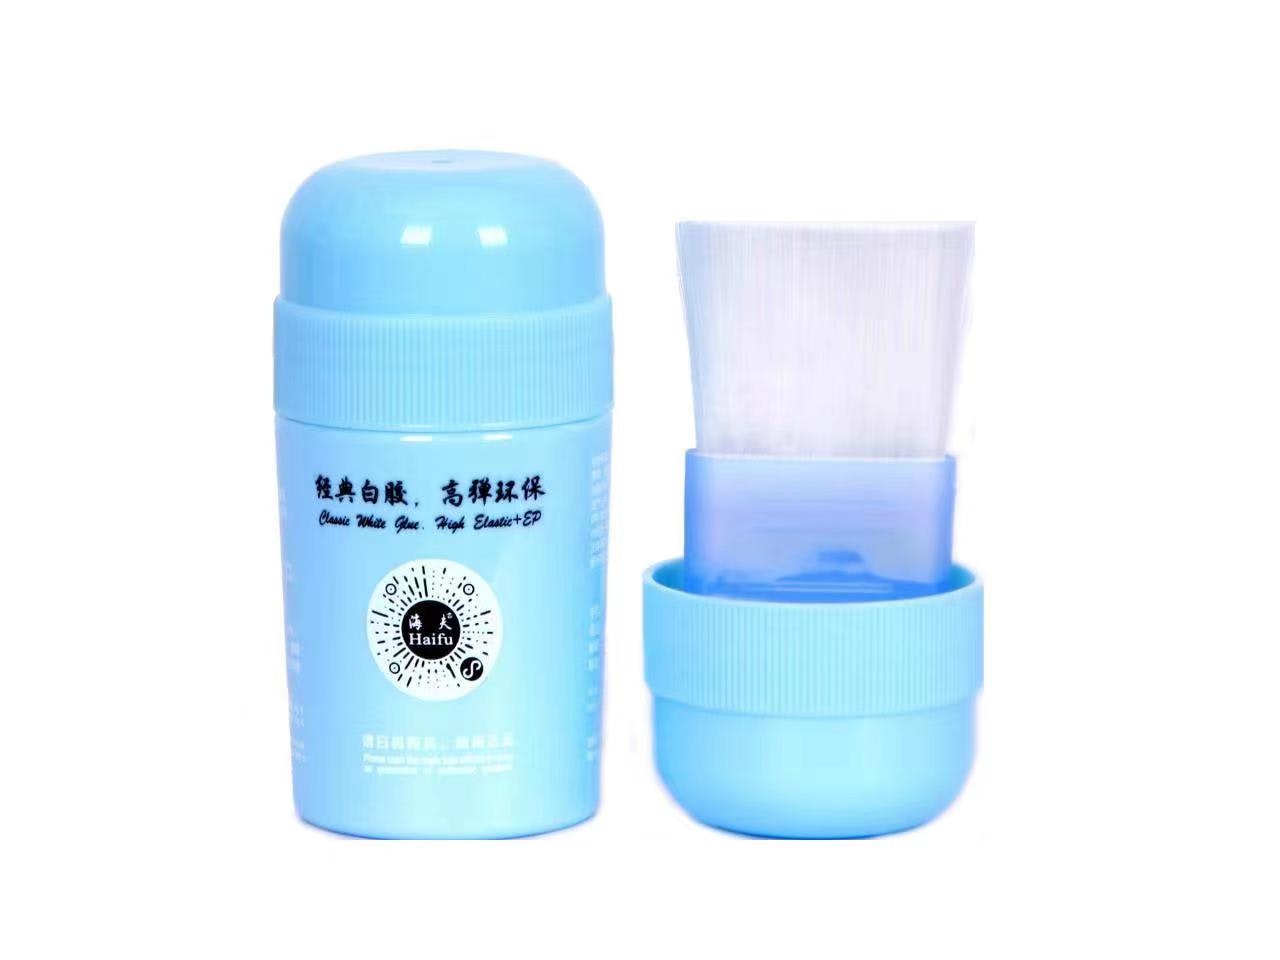 Haifu - White Glue 60ml